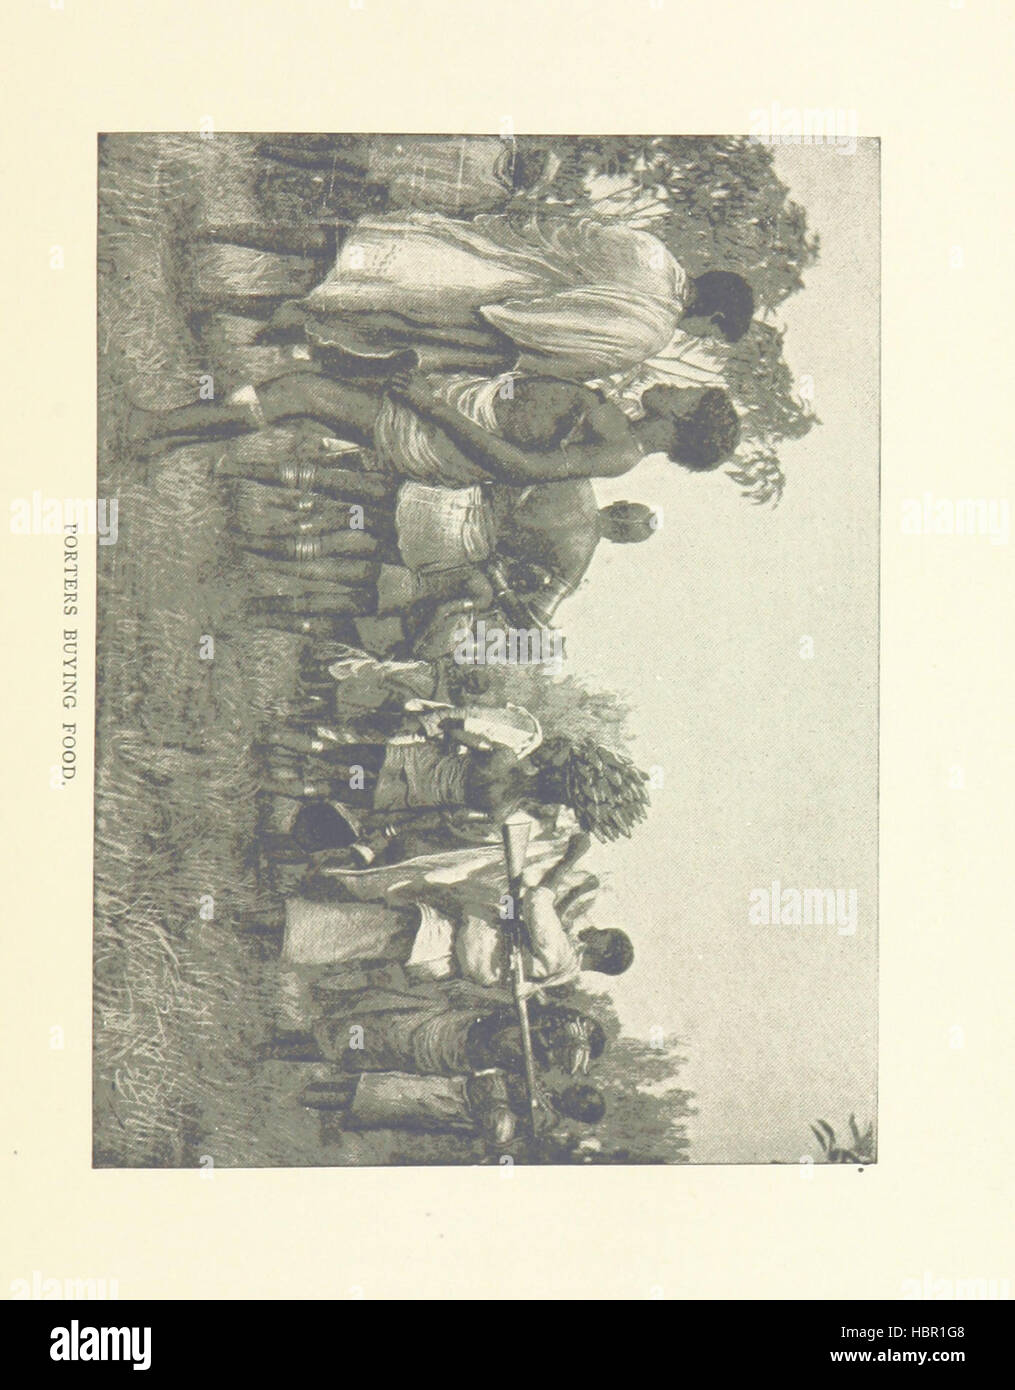 Bild von Seite 55 von "Scouting für Stanley in Ost-Afrika... Mit Illustrationen Bild entnommen Seite 55 von "Scouting für Stanley in Stockfoto